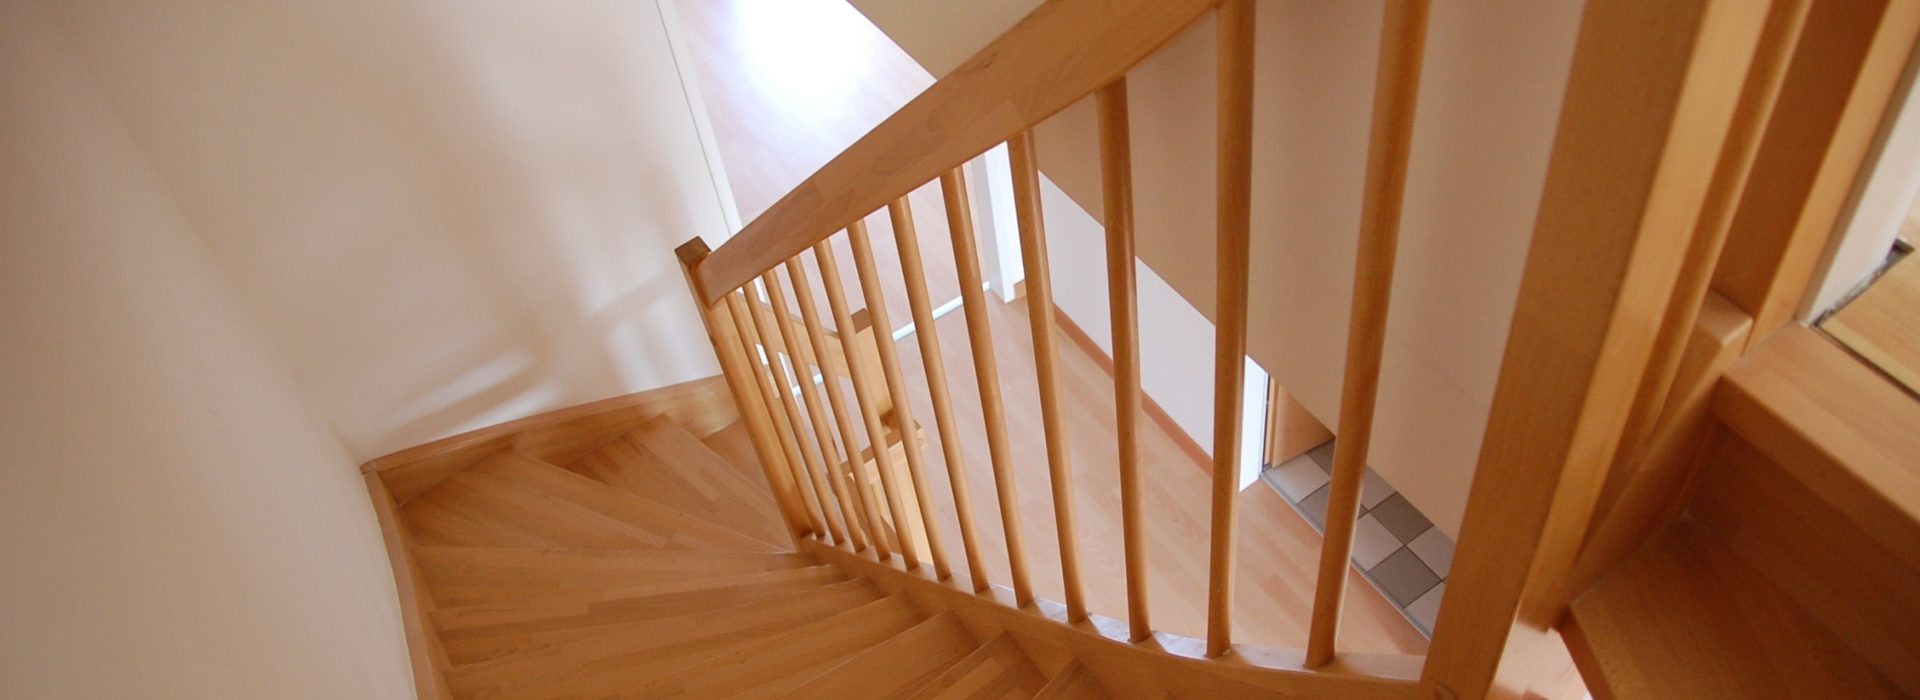 De ideale trap voor in je huis